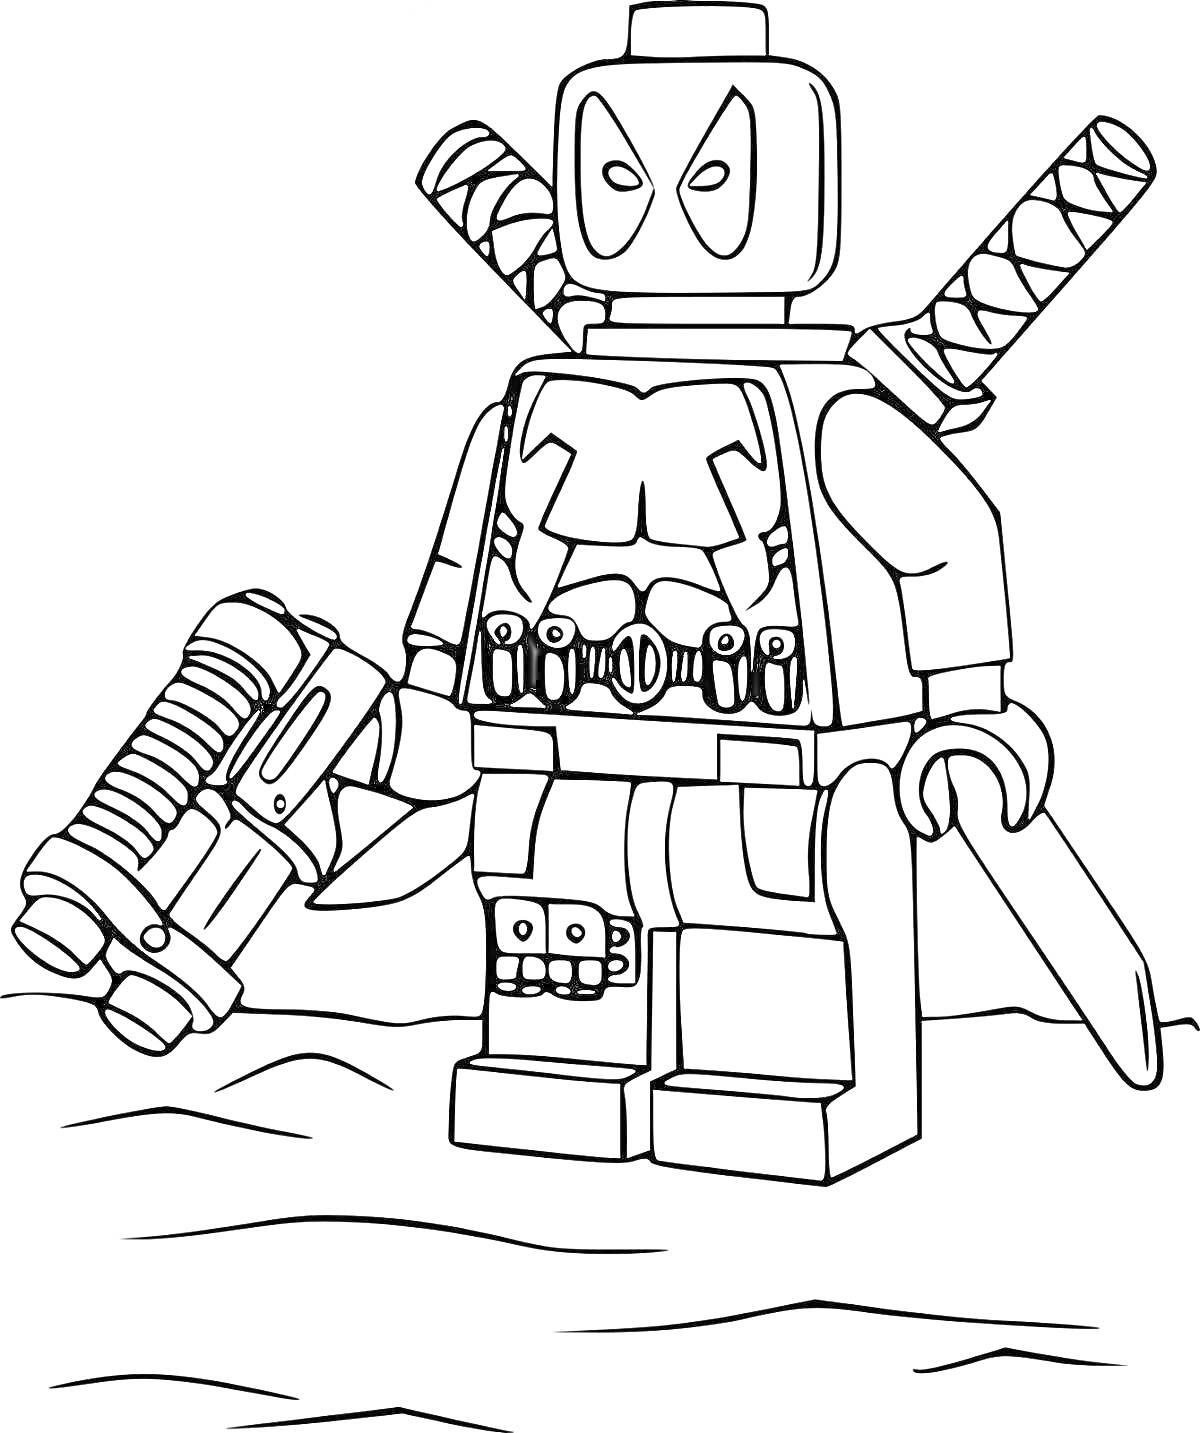 Раскраска Лего фигура с оружием и двумя мечами на спине